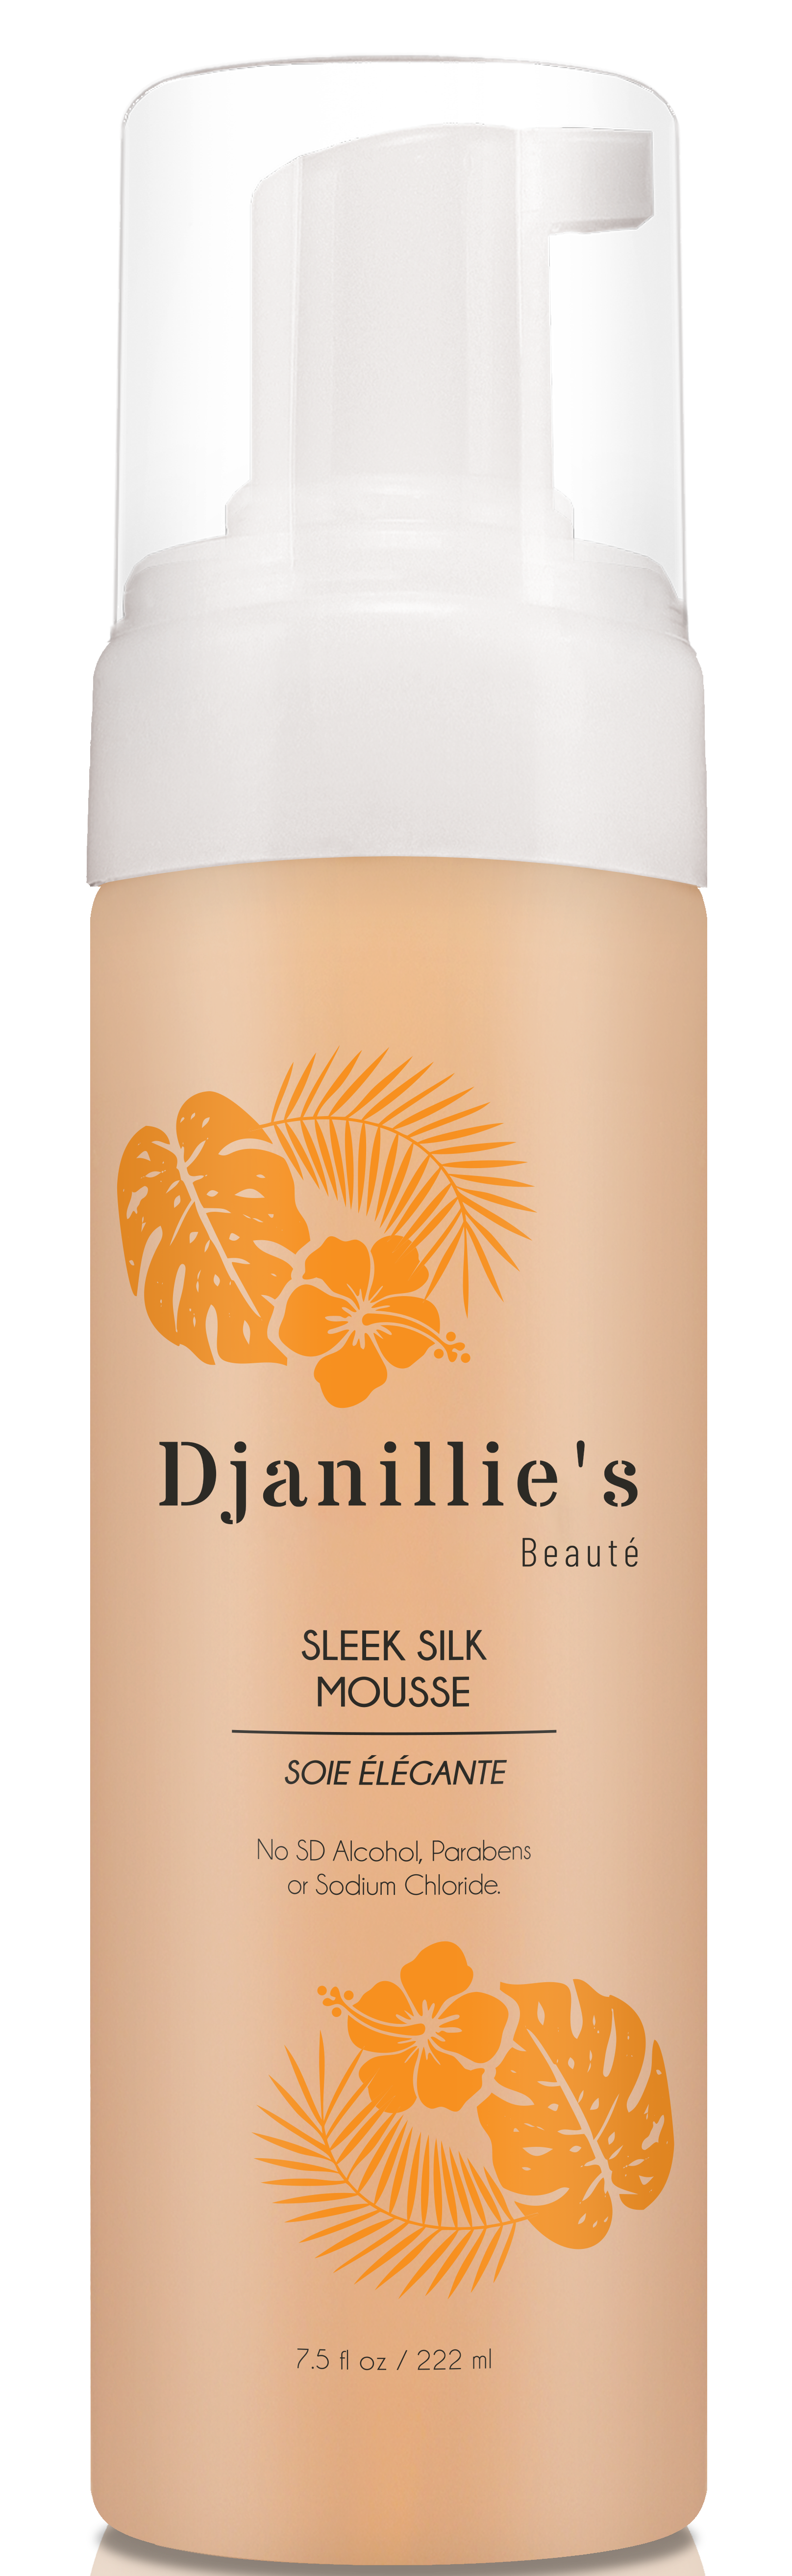 Sleek Silk Mousse - Djanillie's Beauté